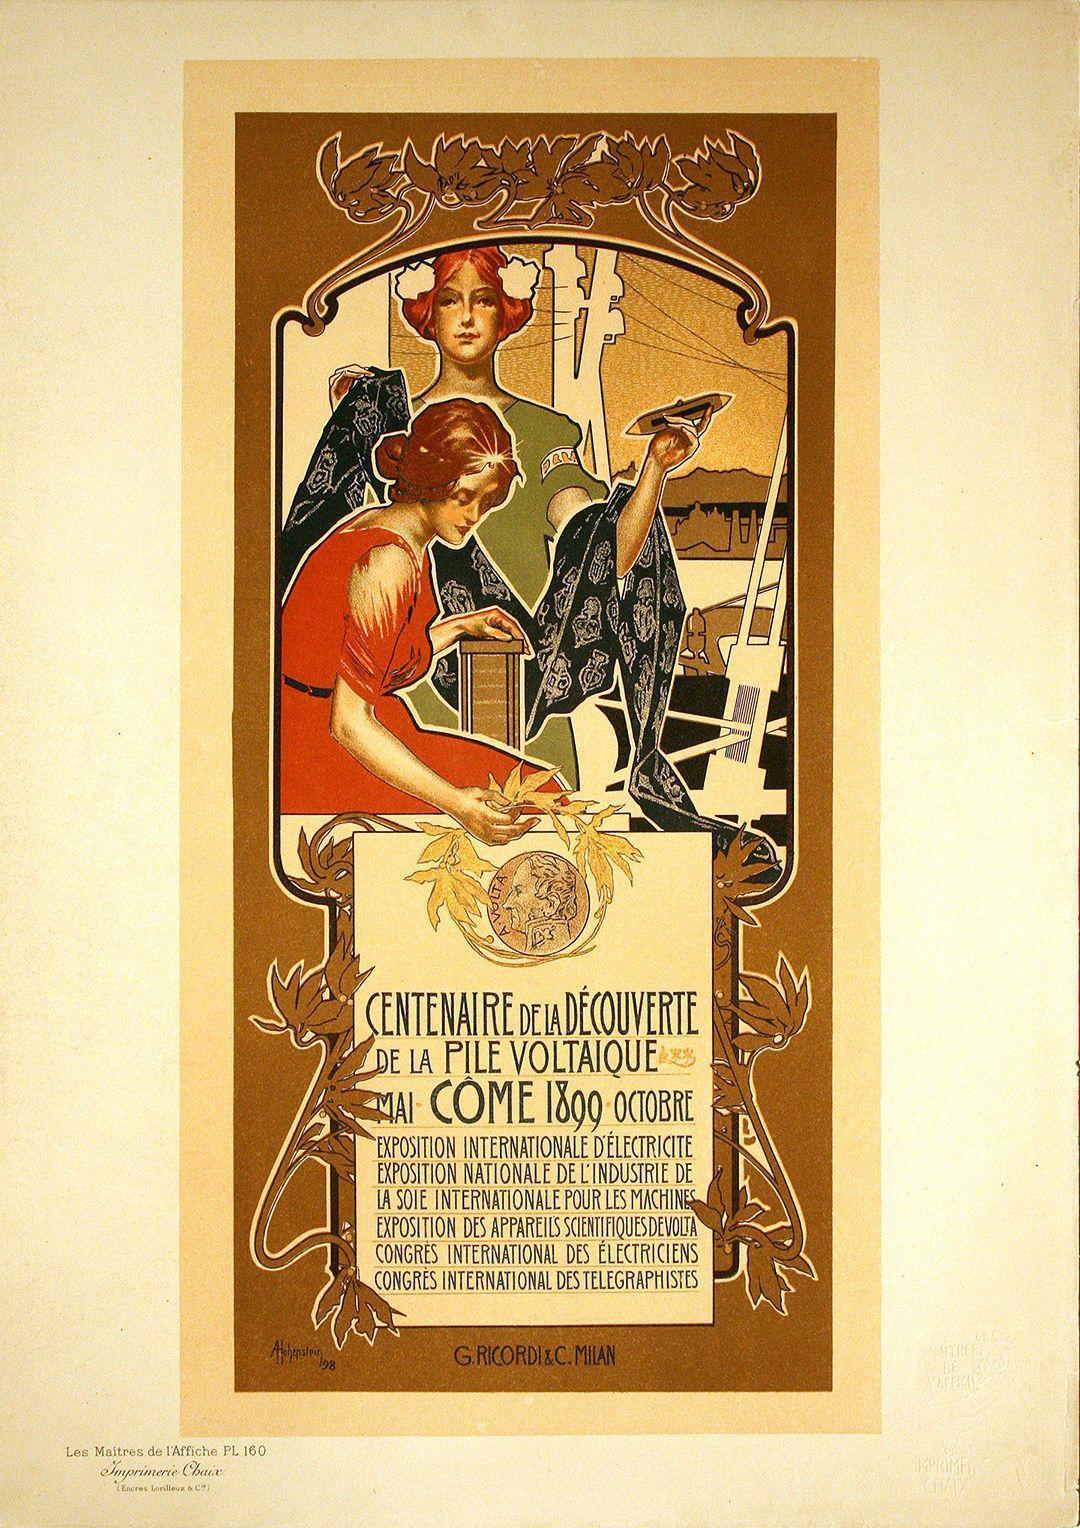 Original Maitres de L'Affiche - PL 160 by Adolfo Hohenstein 1899 - Centenaire de la Decouverte de la Pile Voltaique